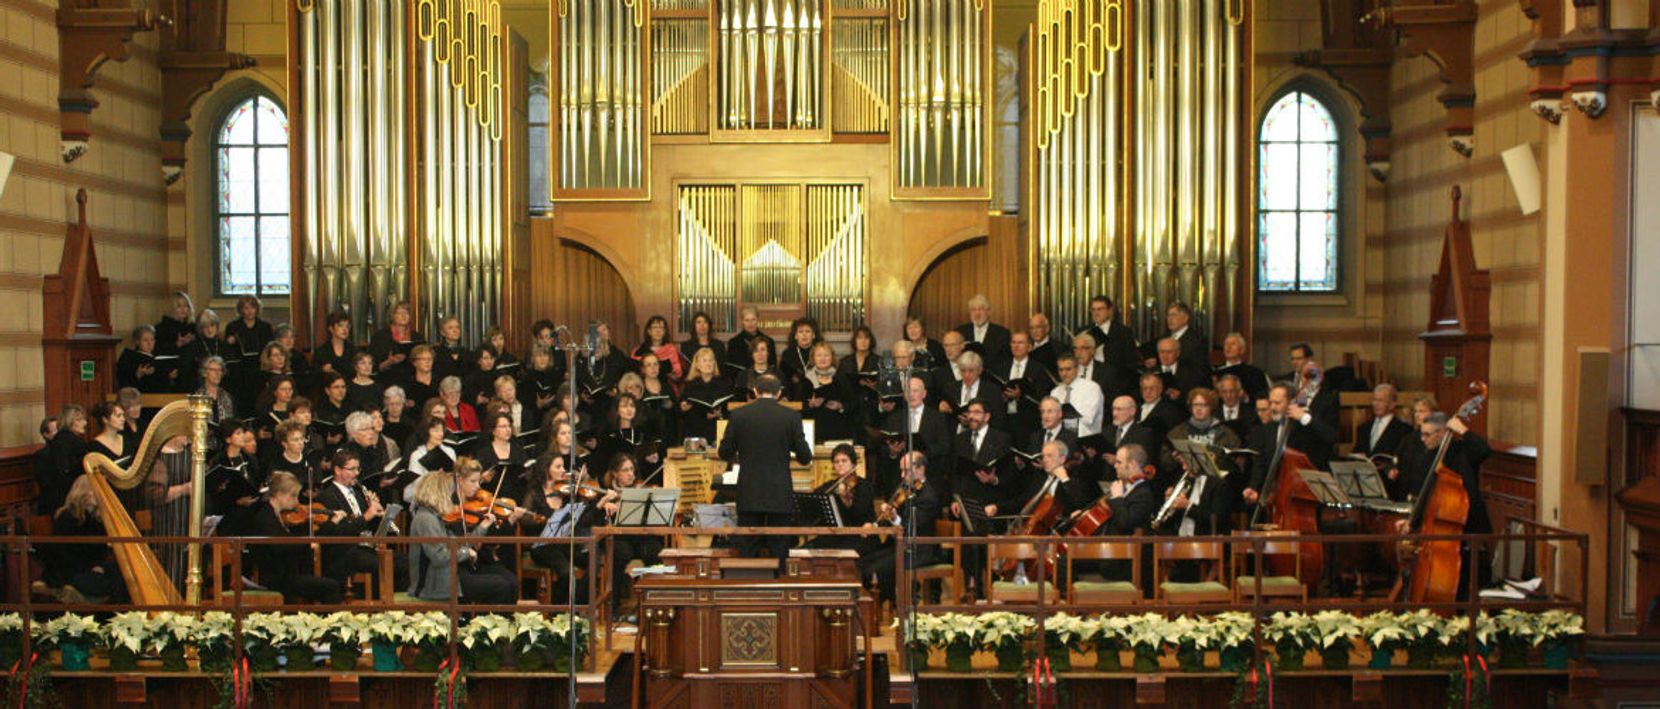 Das Bild zeigt den Singkreis Wetzikon während einem Auftritt in der Kirche.